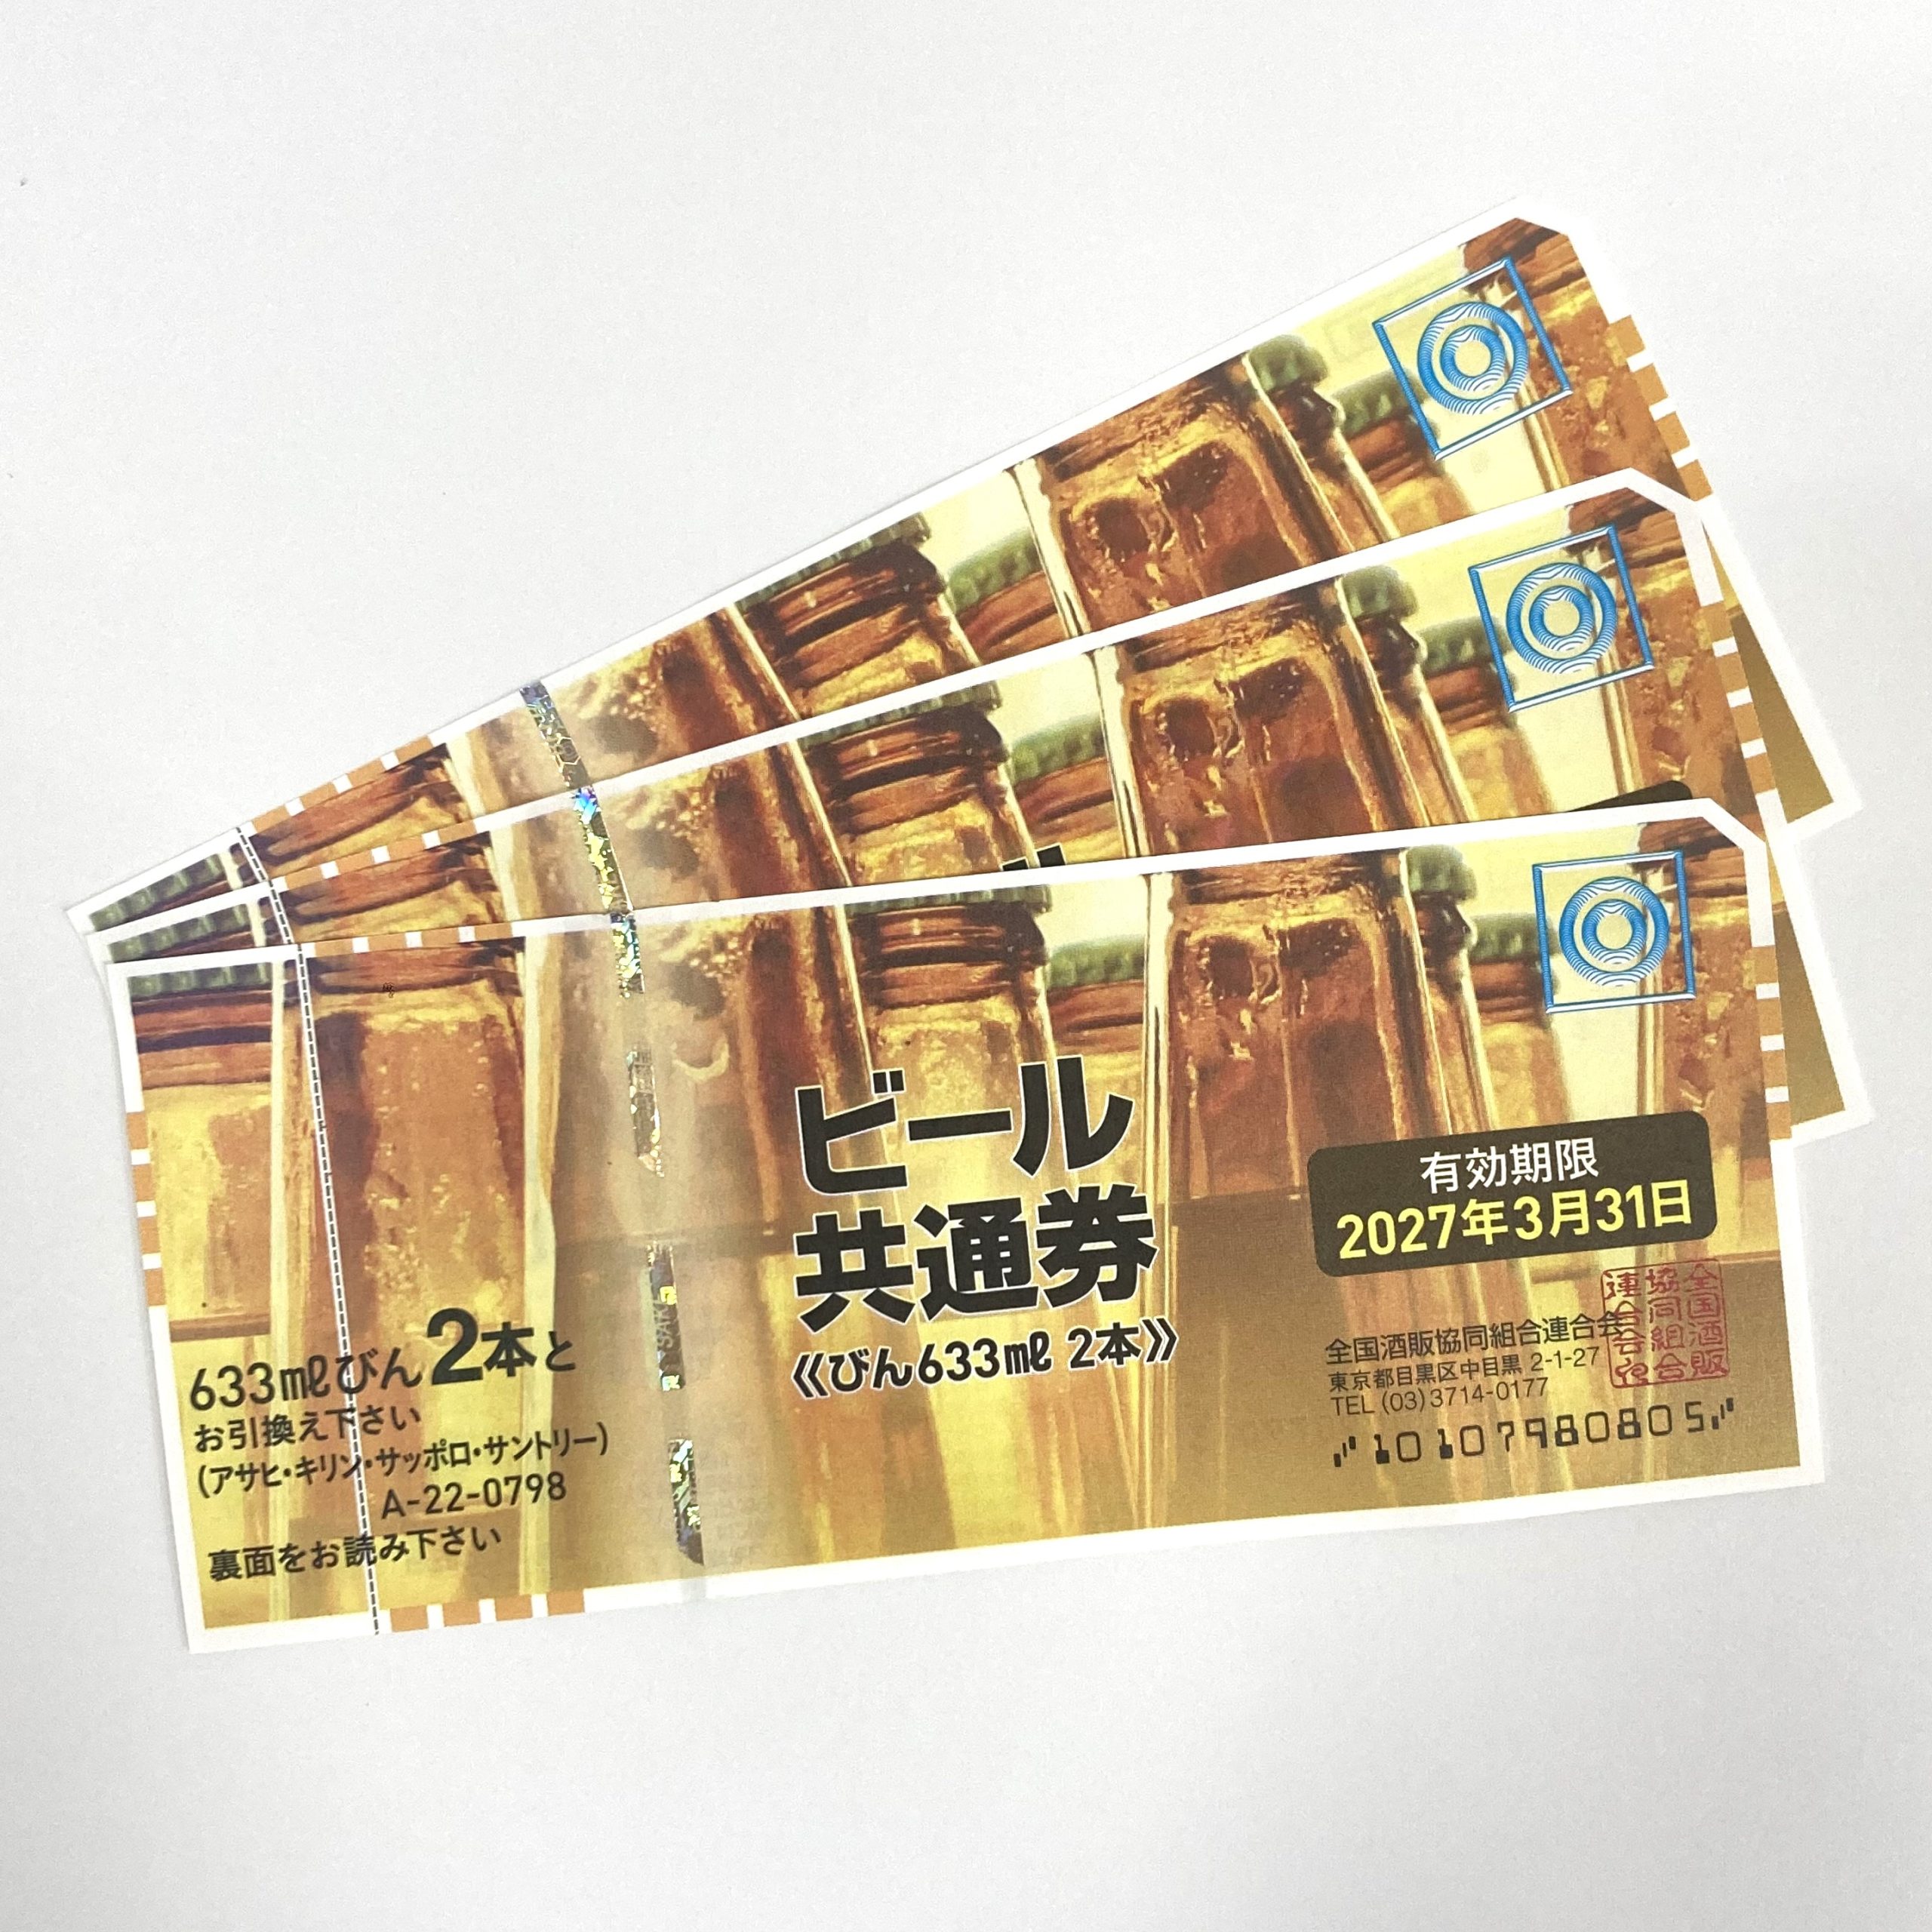 ビール共通券 798円